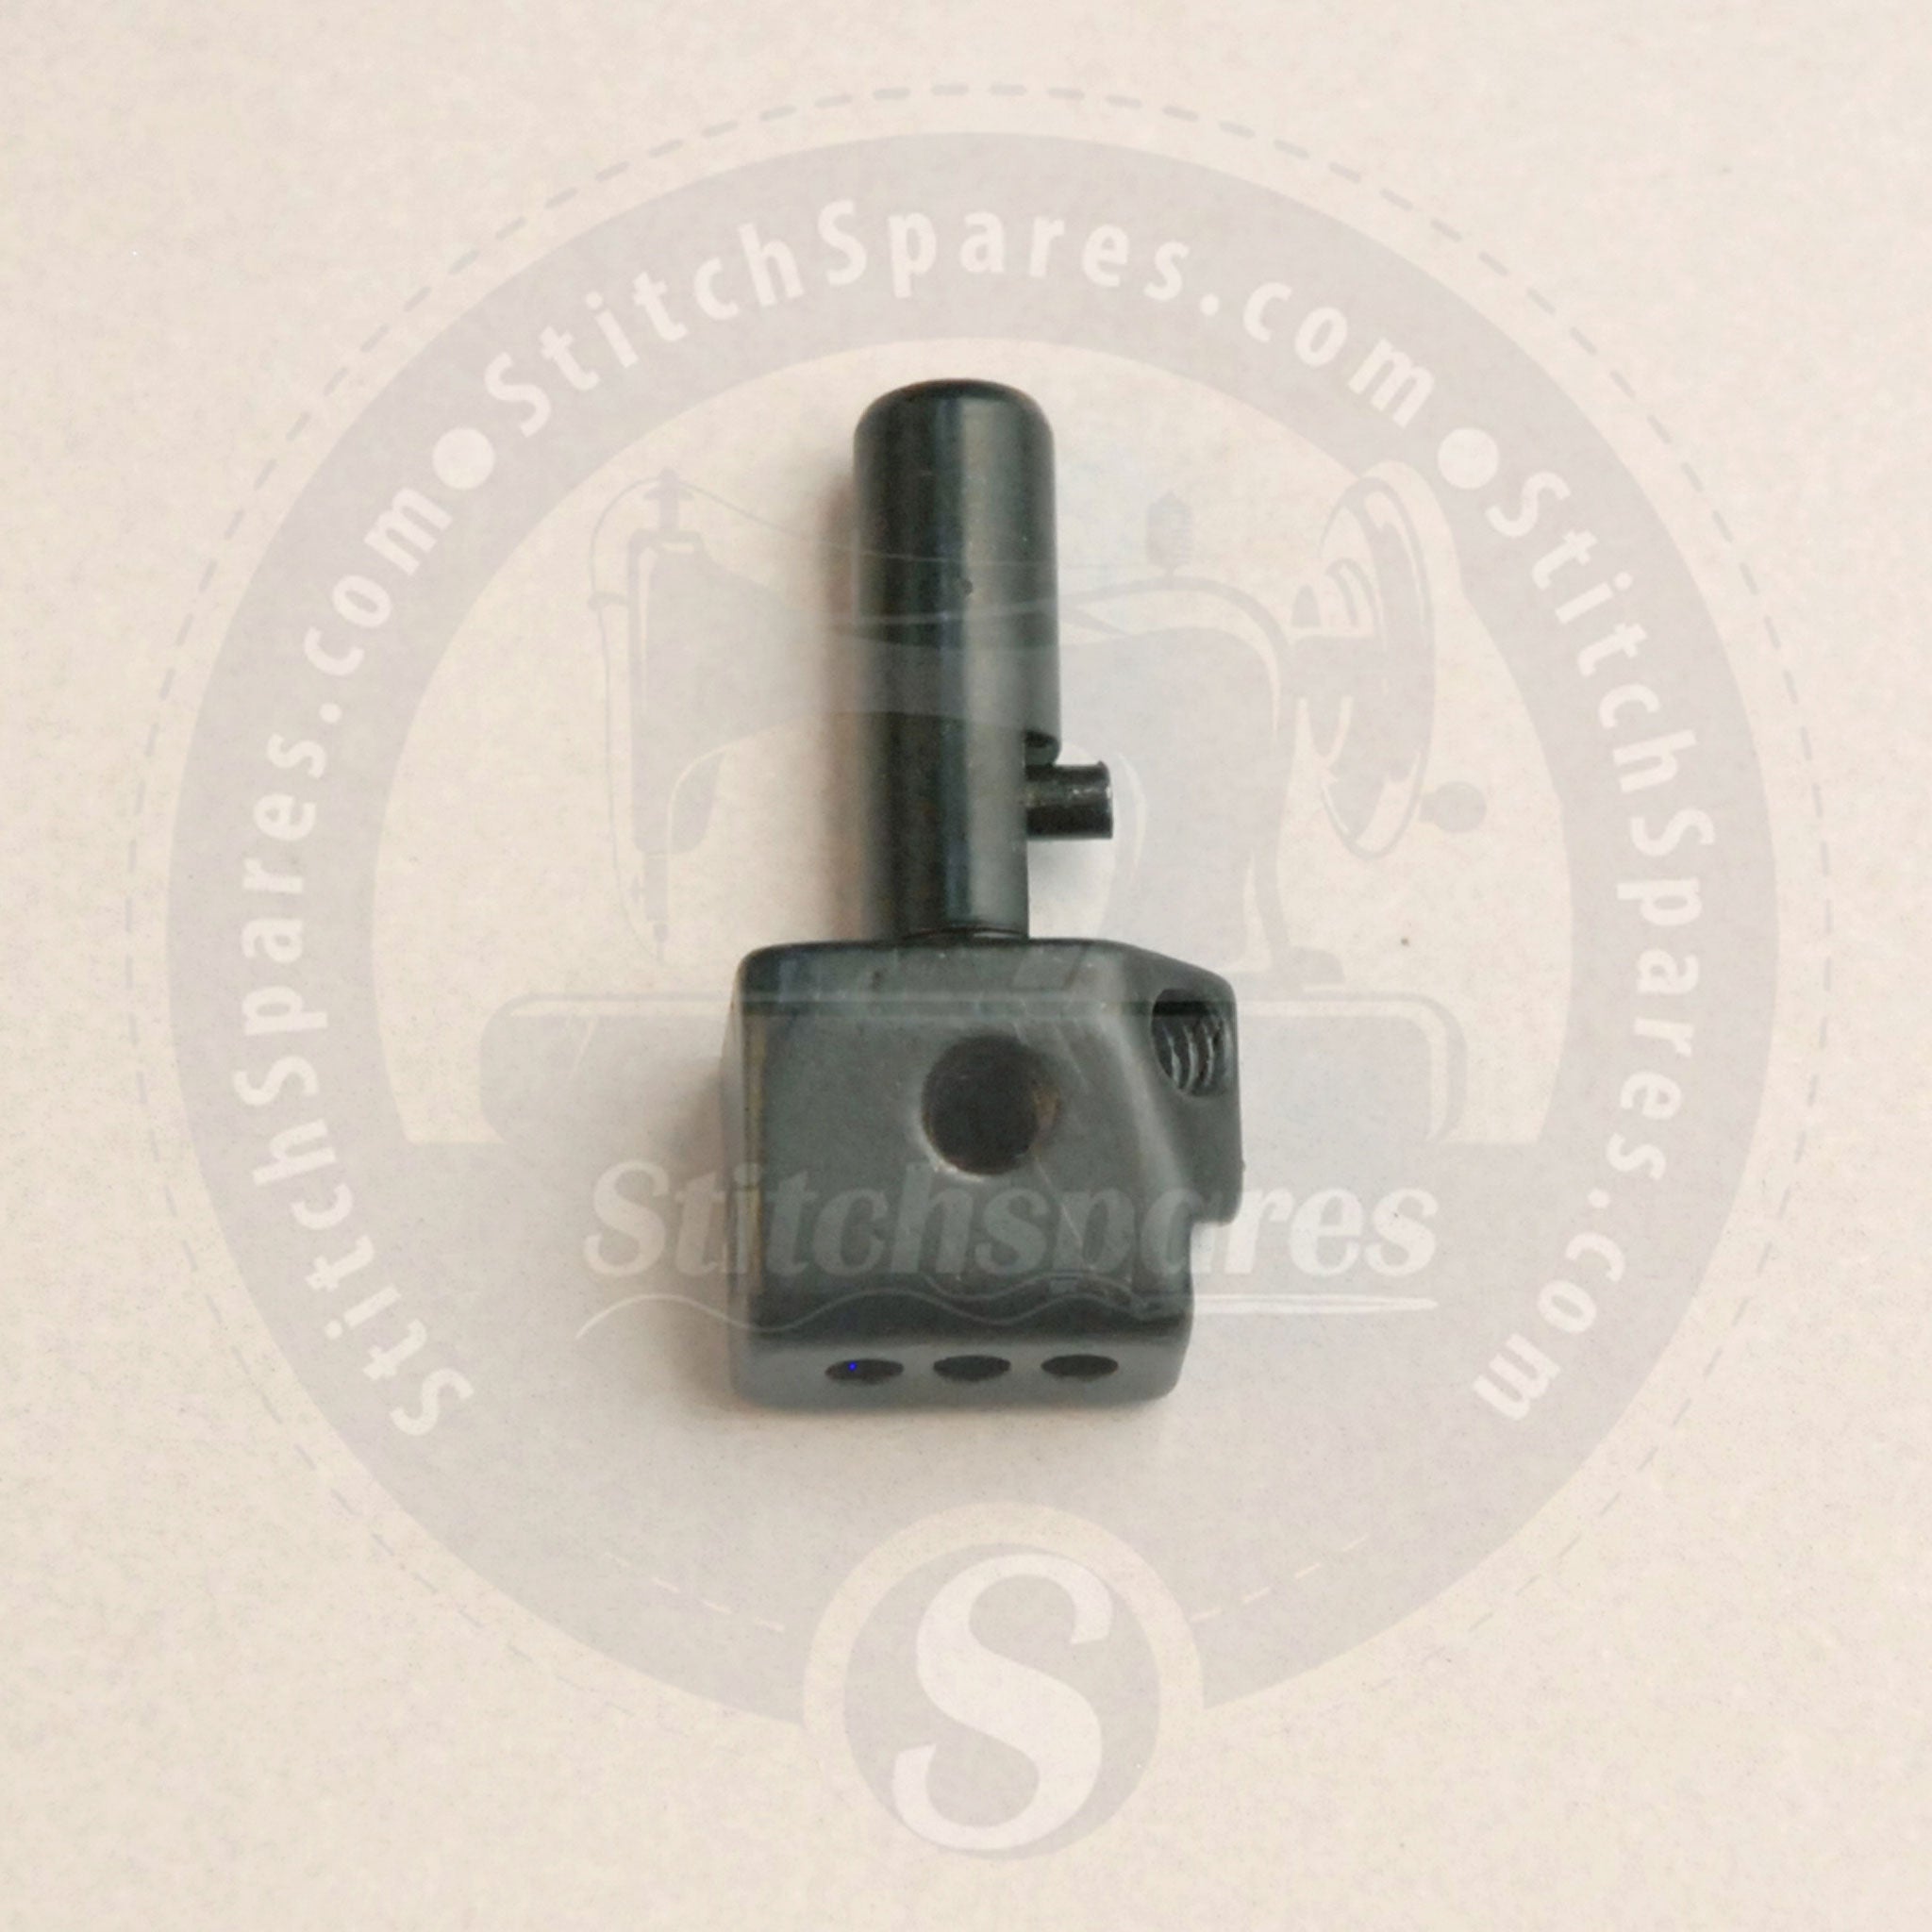 12-8010-1 Portaagujas para Kansai Special Flatlock (Interlock) WX8800 DVK1703D V7003D DWK1803D W8003D Máquina de coser industrial